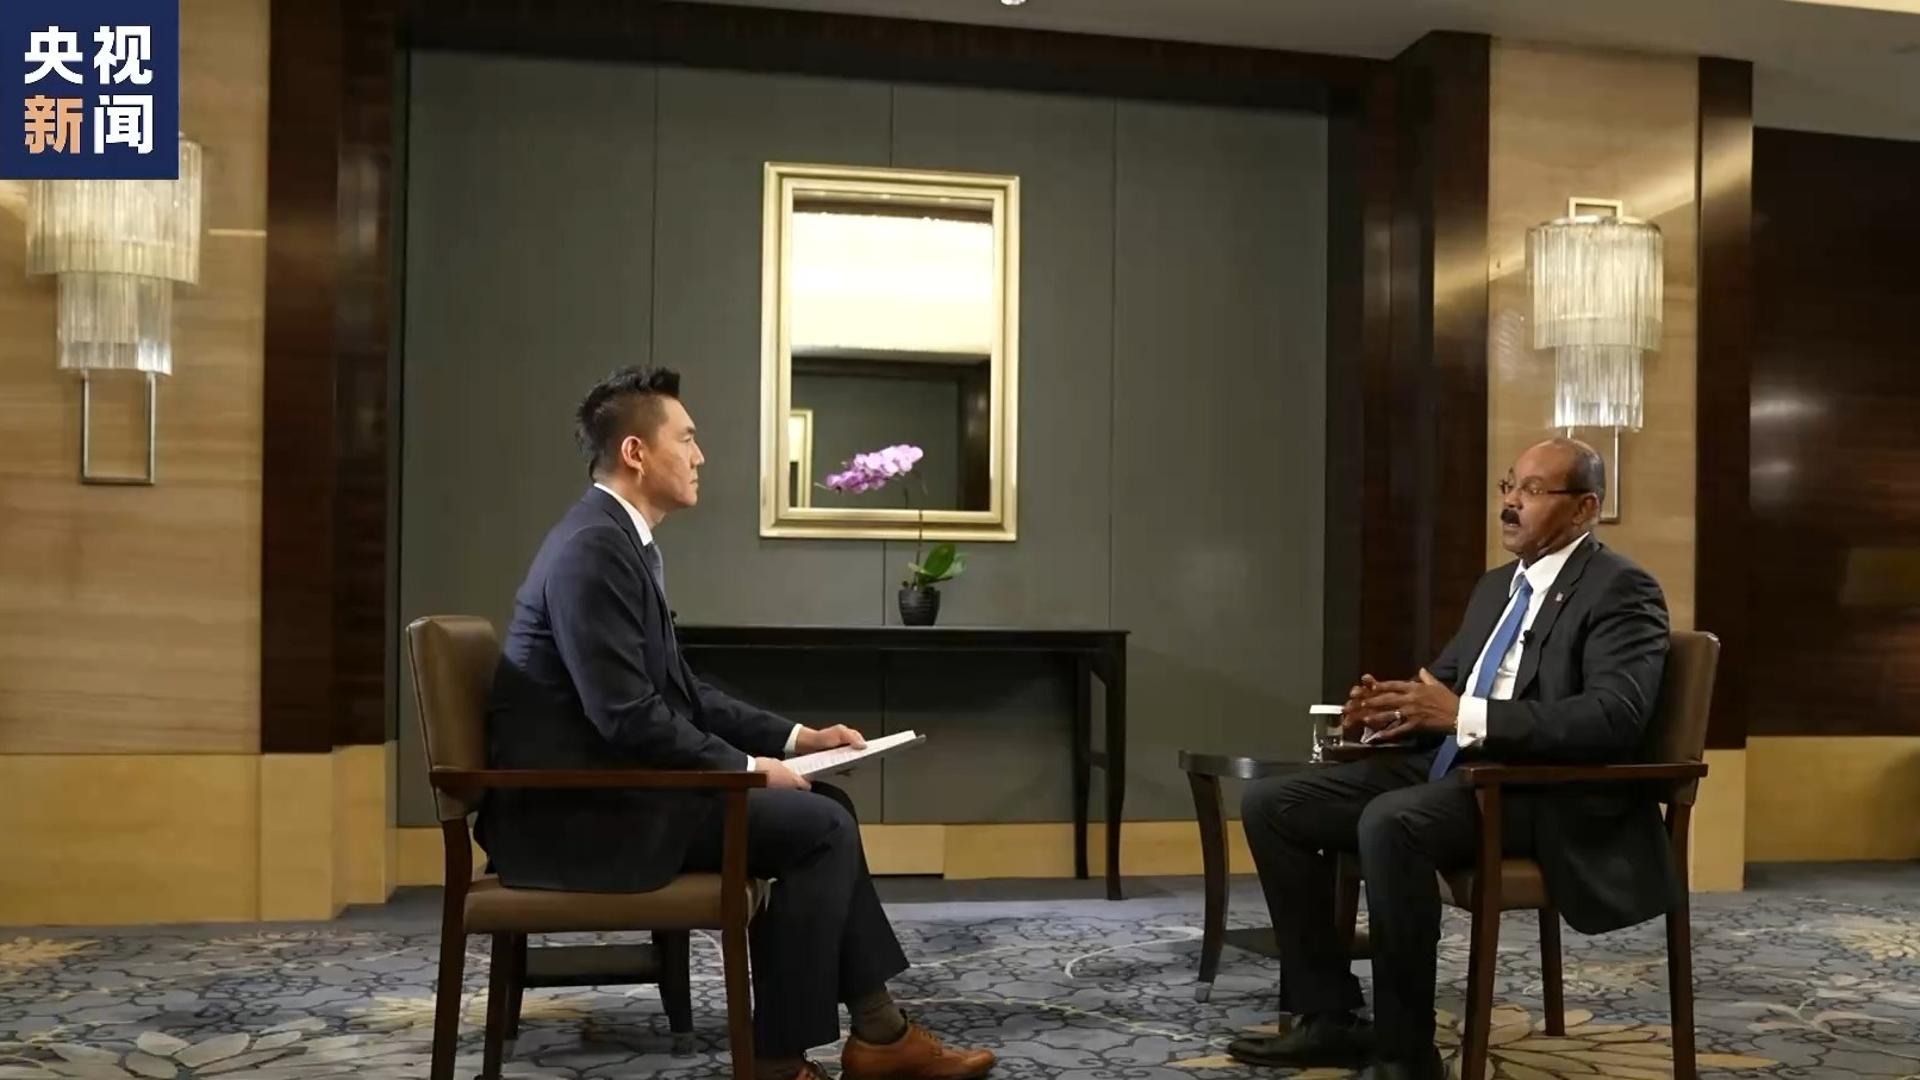 نخست وزیر آنتیگوا و باربودا: رئیس جمهور چین متعهد به توسعه کل بشریت استا